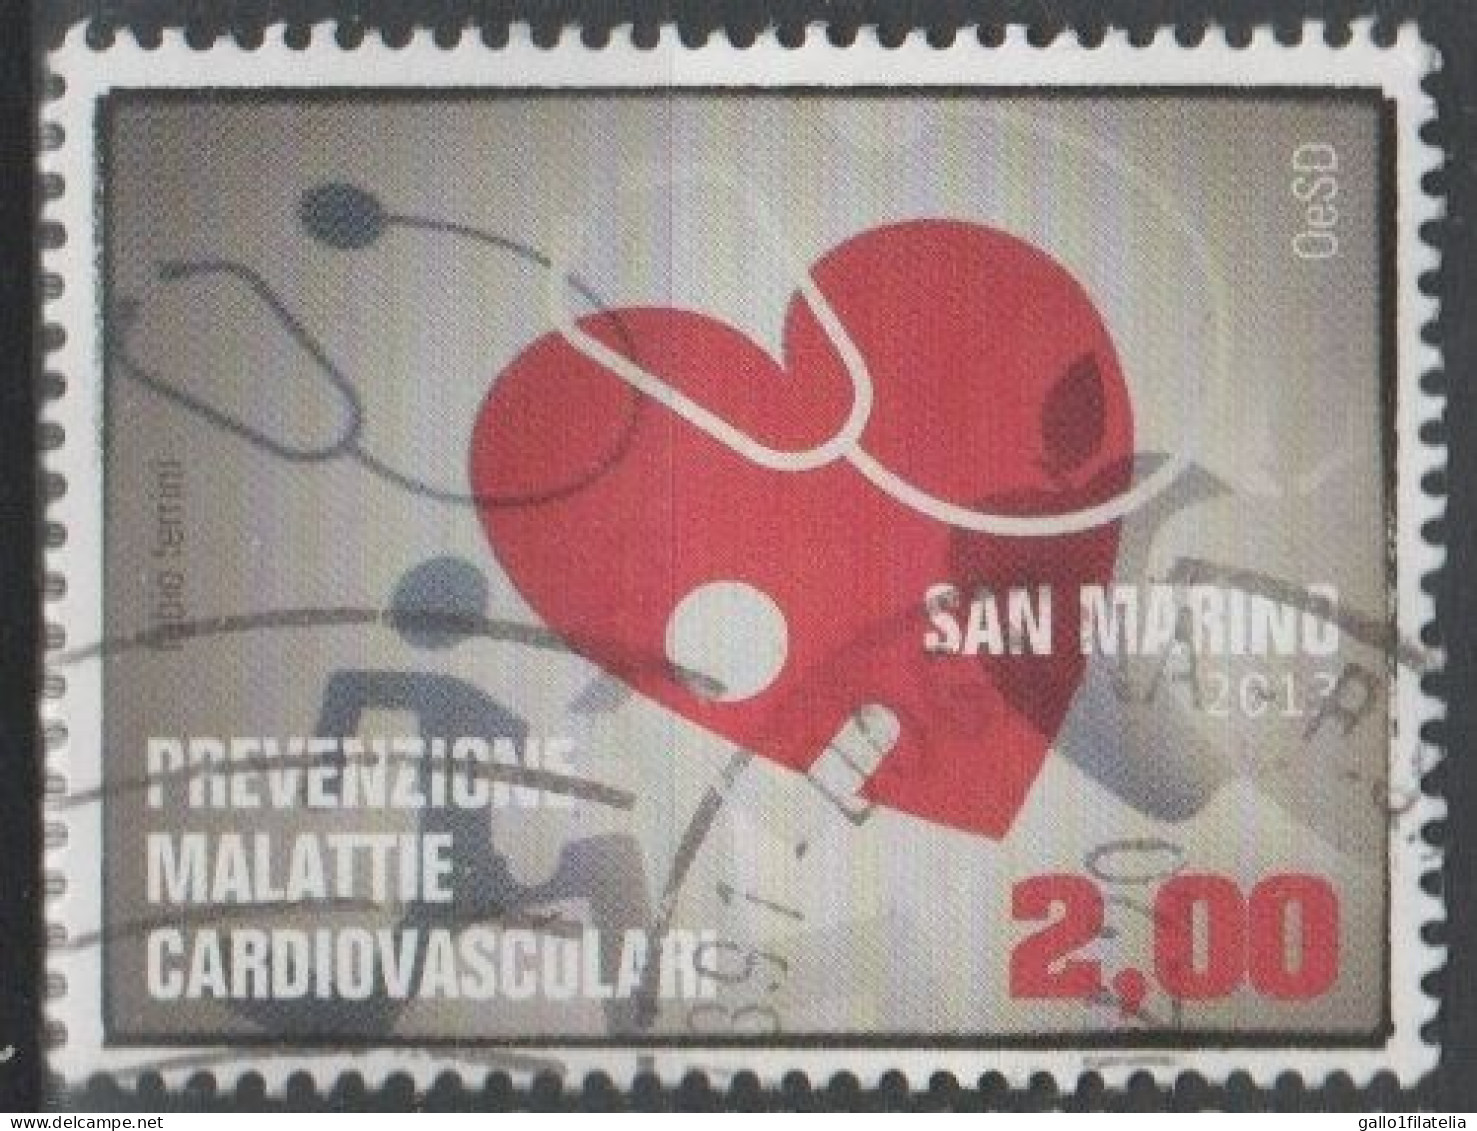 2013 - SAN MARINO - PREVENZIONE MALATTIE CARDIOVASCOLARI / PREVENTION OF CARDIOVASCULAR DISEASES. USATO - Usati